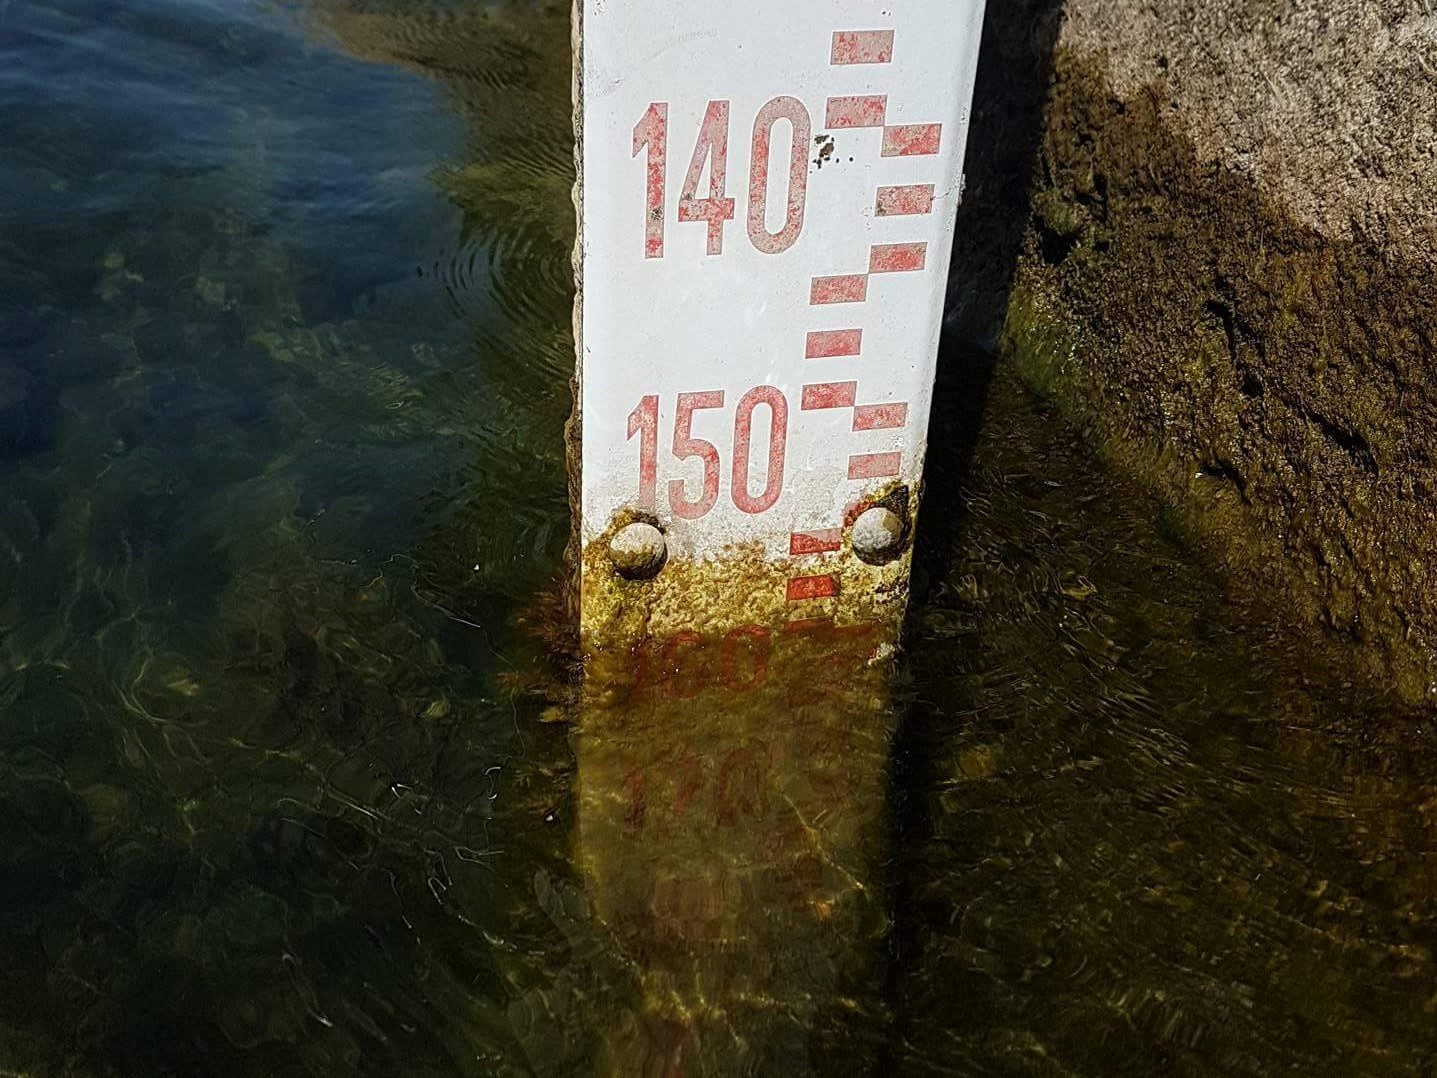 Il 9 luglio il livello di Bracciano è sceso a -154 cm. Ha perso due centimetri in due giorni